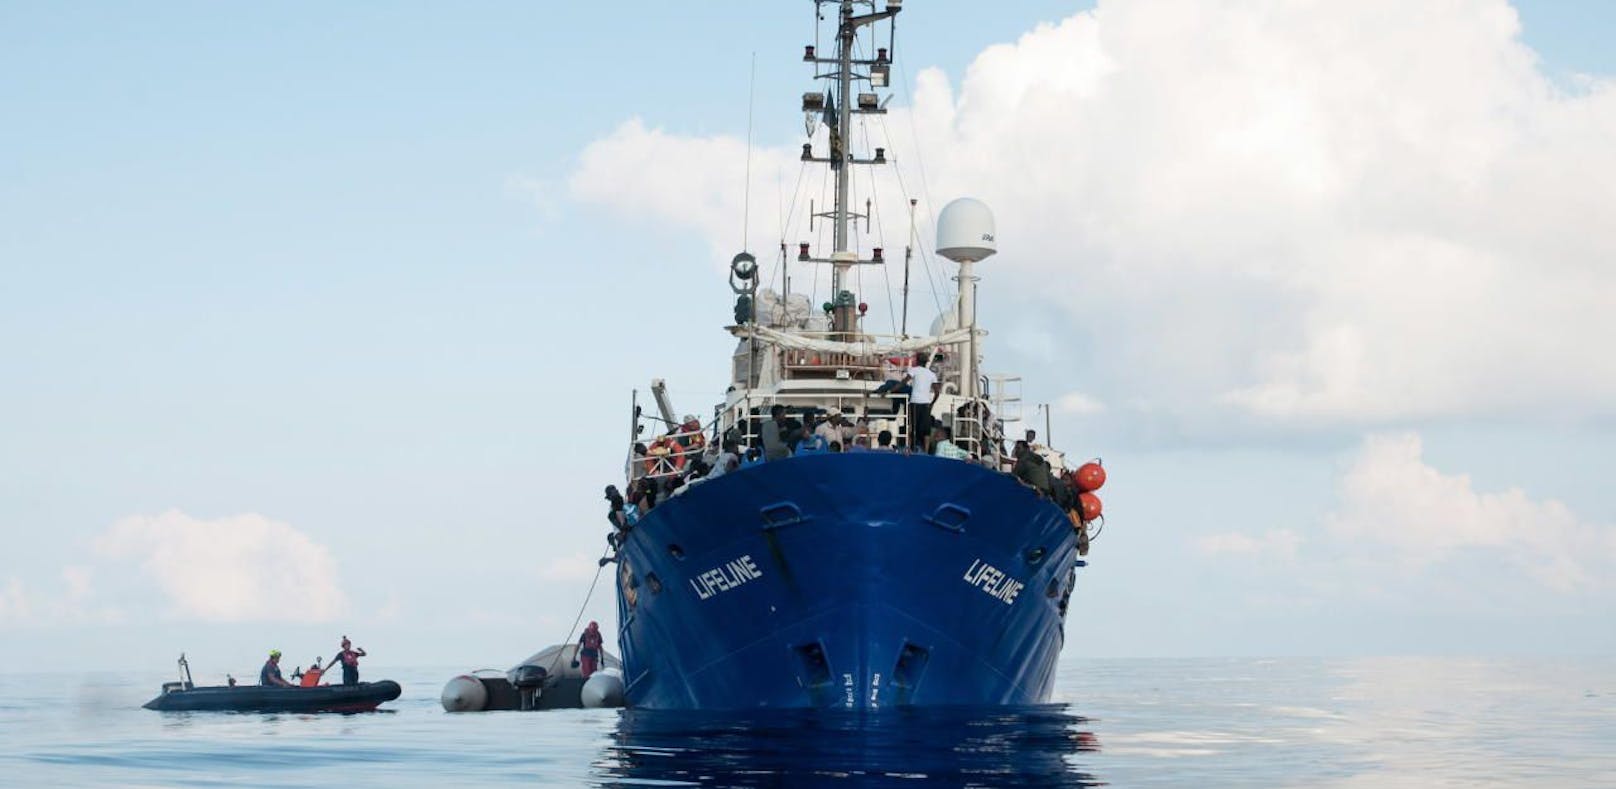 NGO-Schiff "Lifeline" darf in Malta anlegen